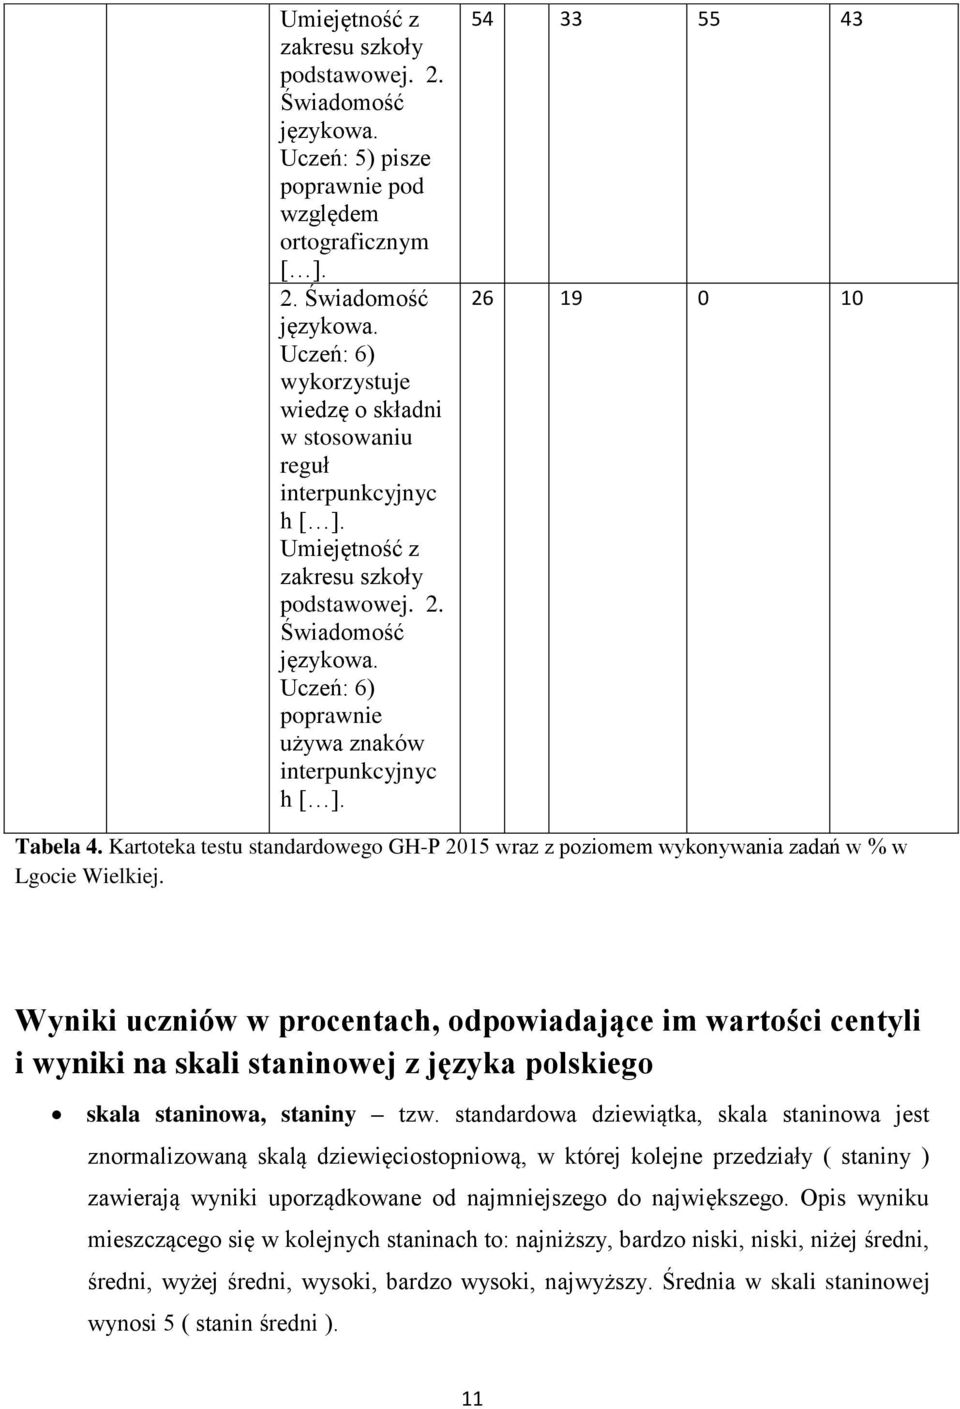 Kartoteka testu standardowego GH-P 2015 wraz z poziomem wykonywania zadań w % w Lgocie Wielkiej.